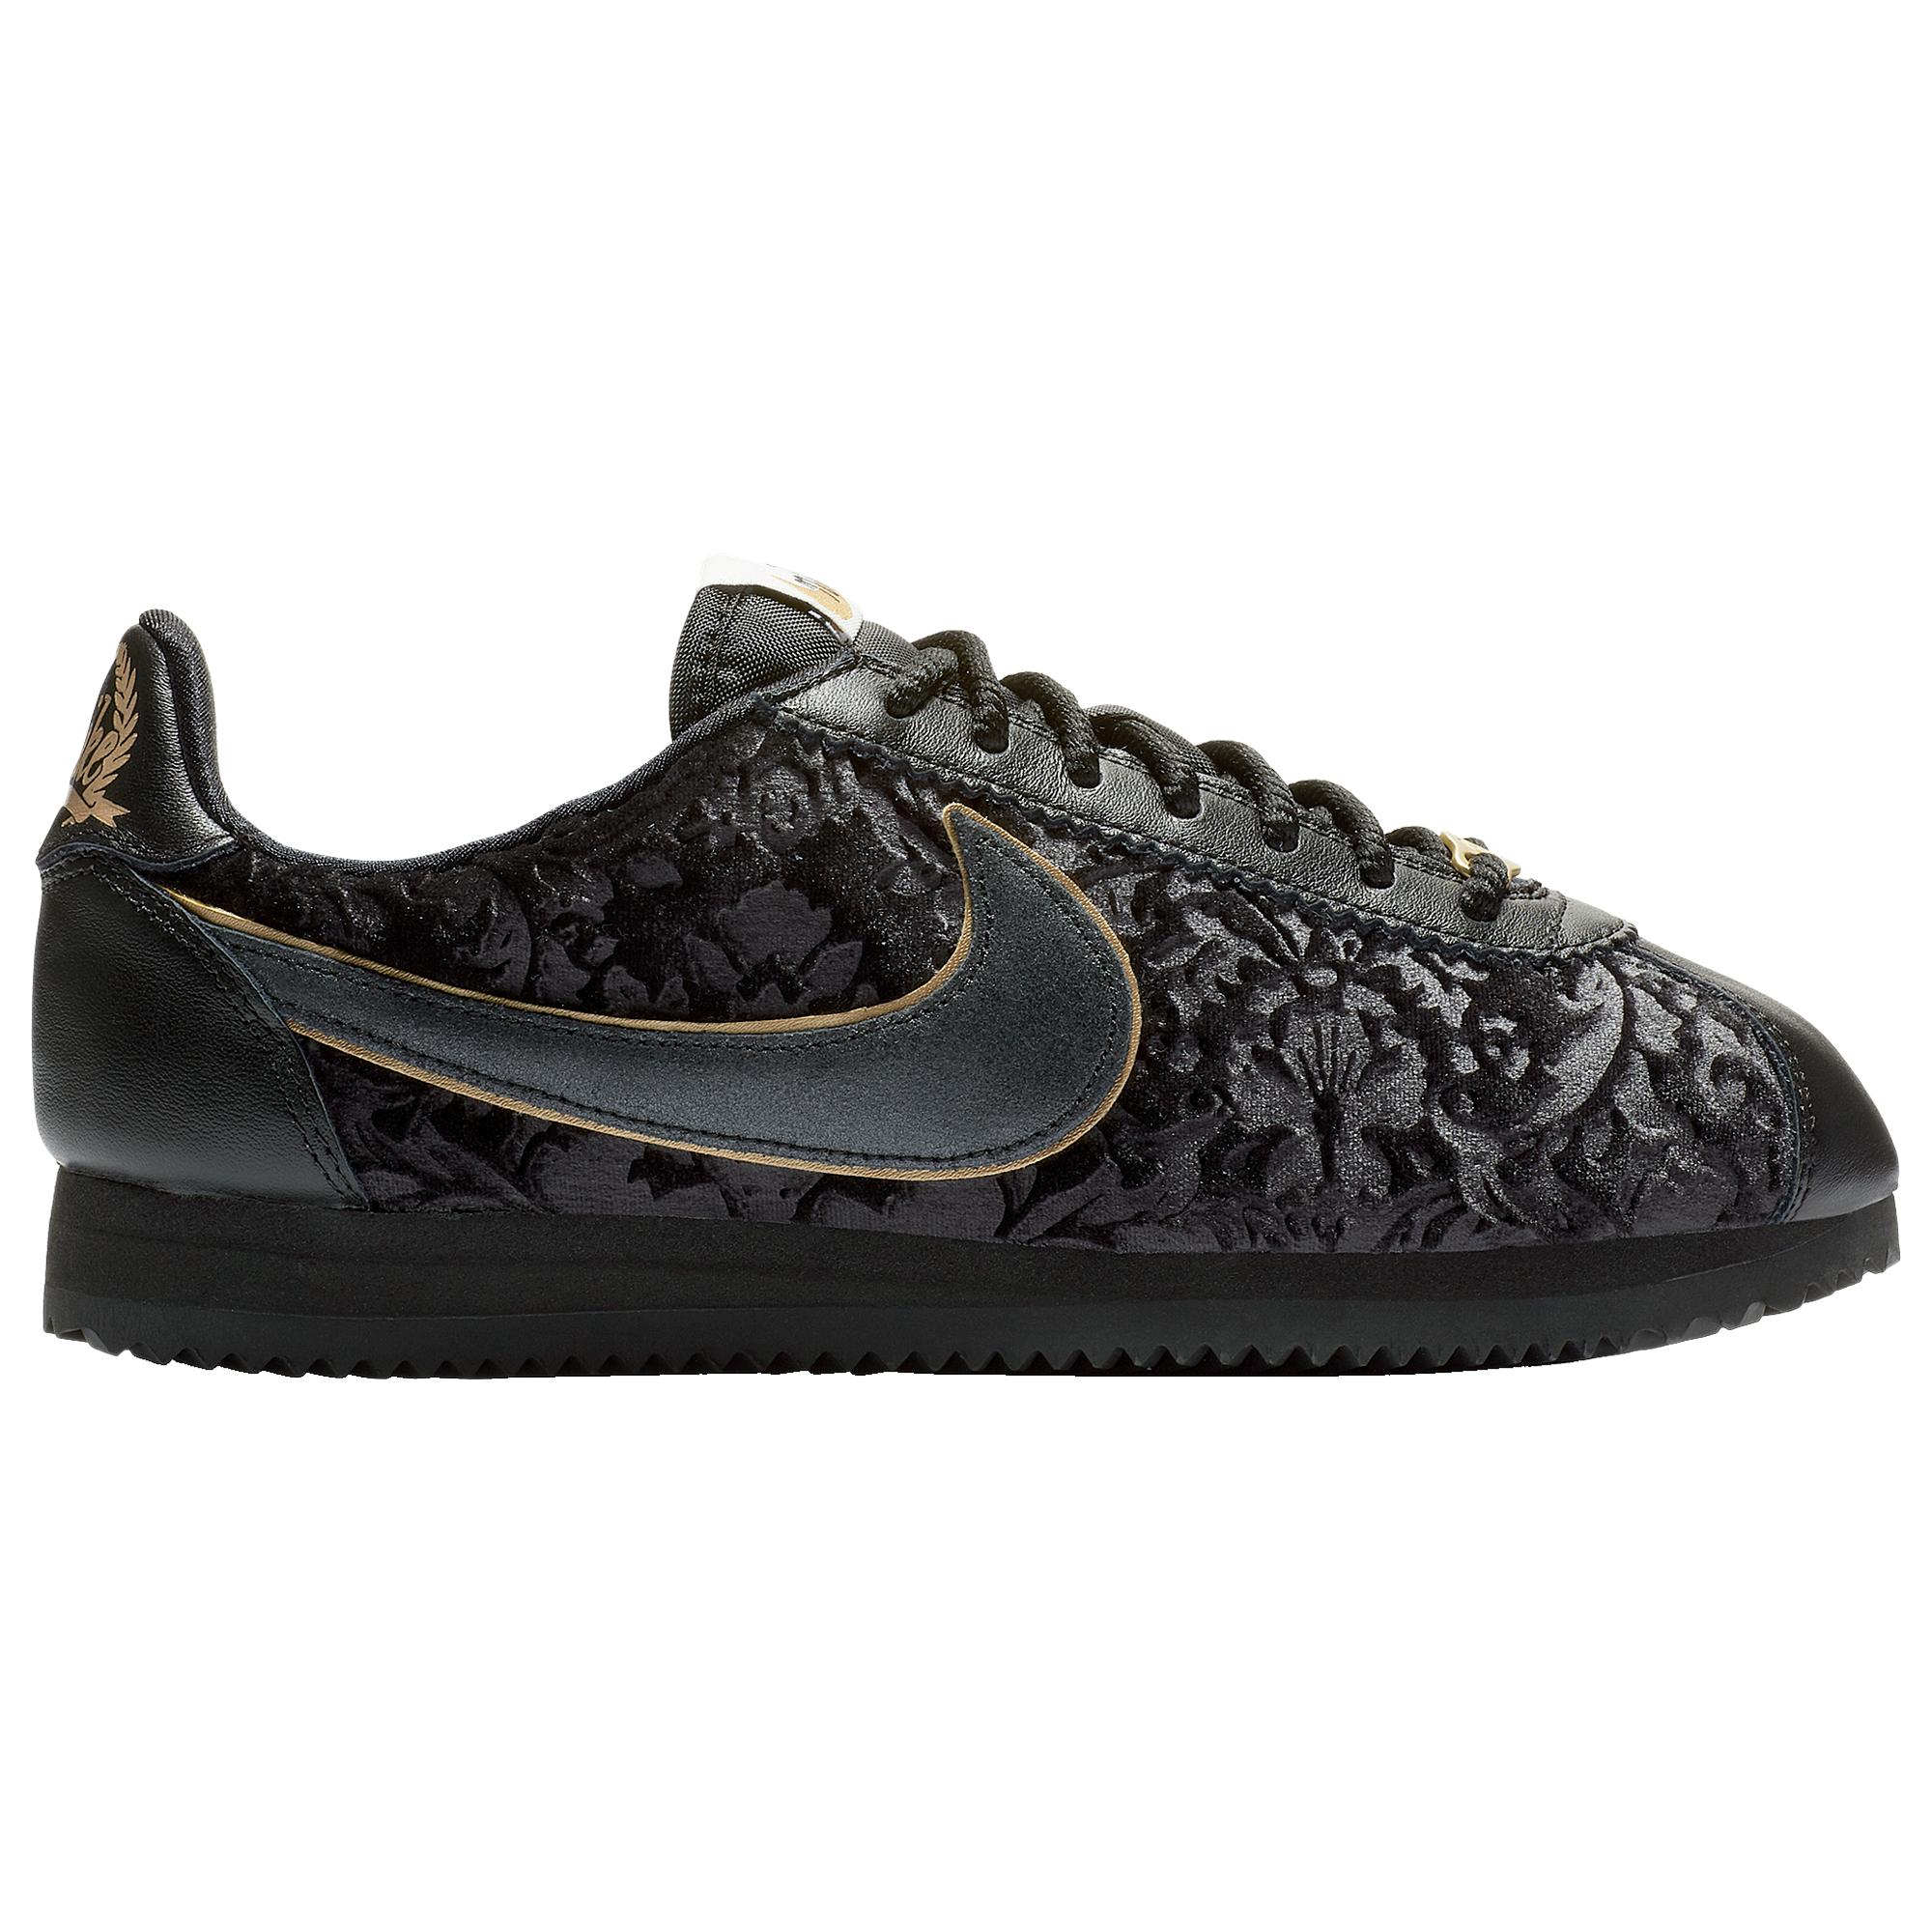 Nike Classic Cortez Velvet Running Shoes in Black/Black/Metallic Gold